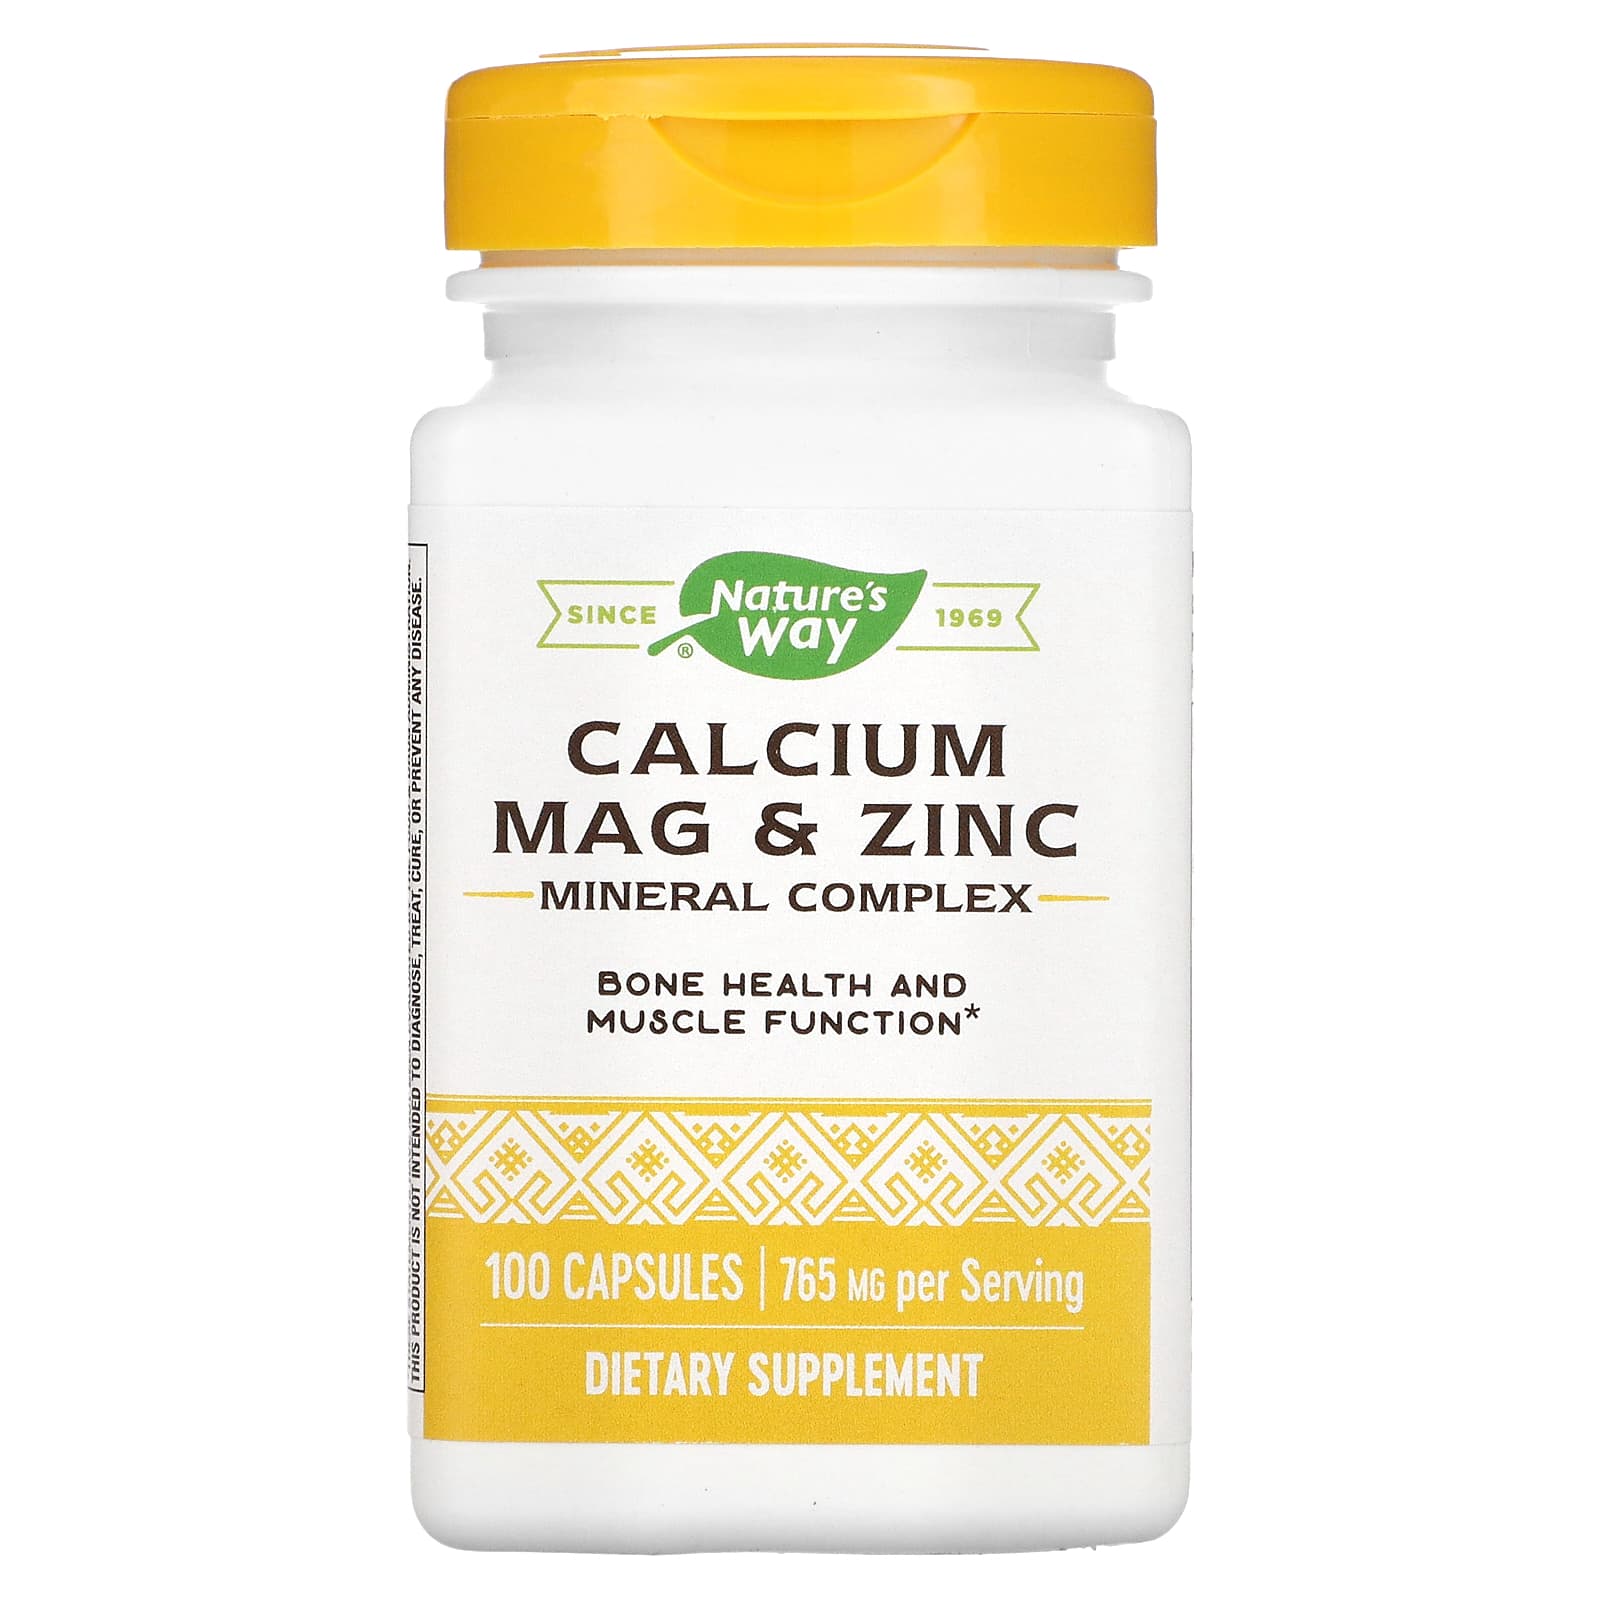 Nature's way calcium magnesium zinc capsules 765 mg 100 Capsules